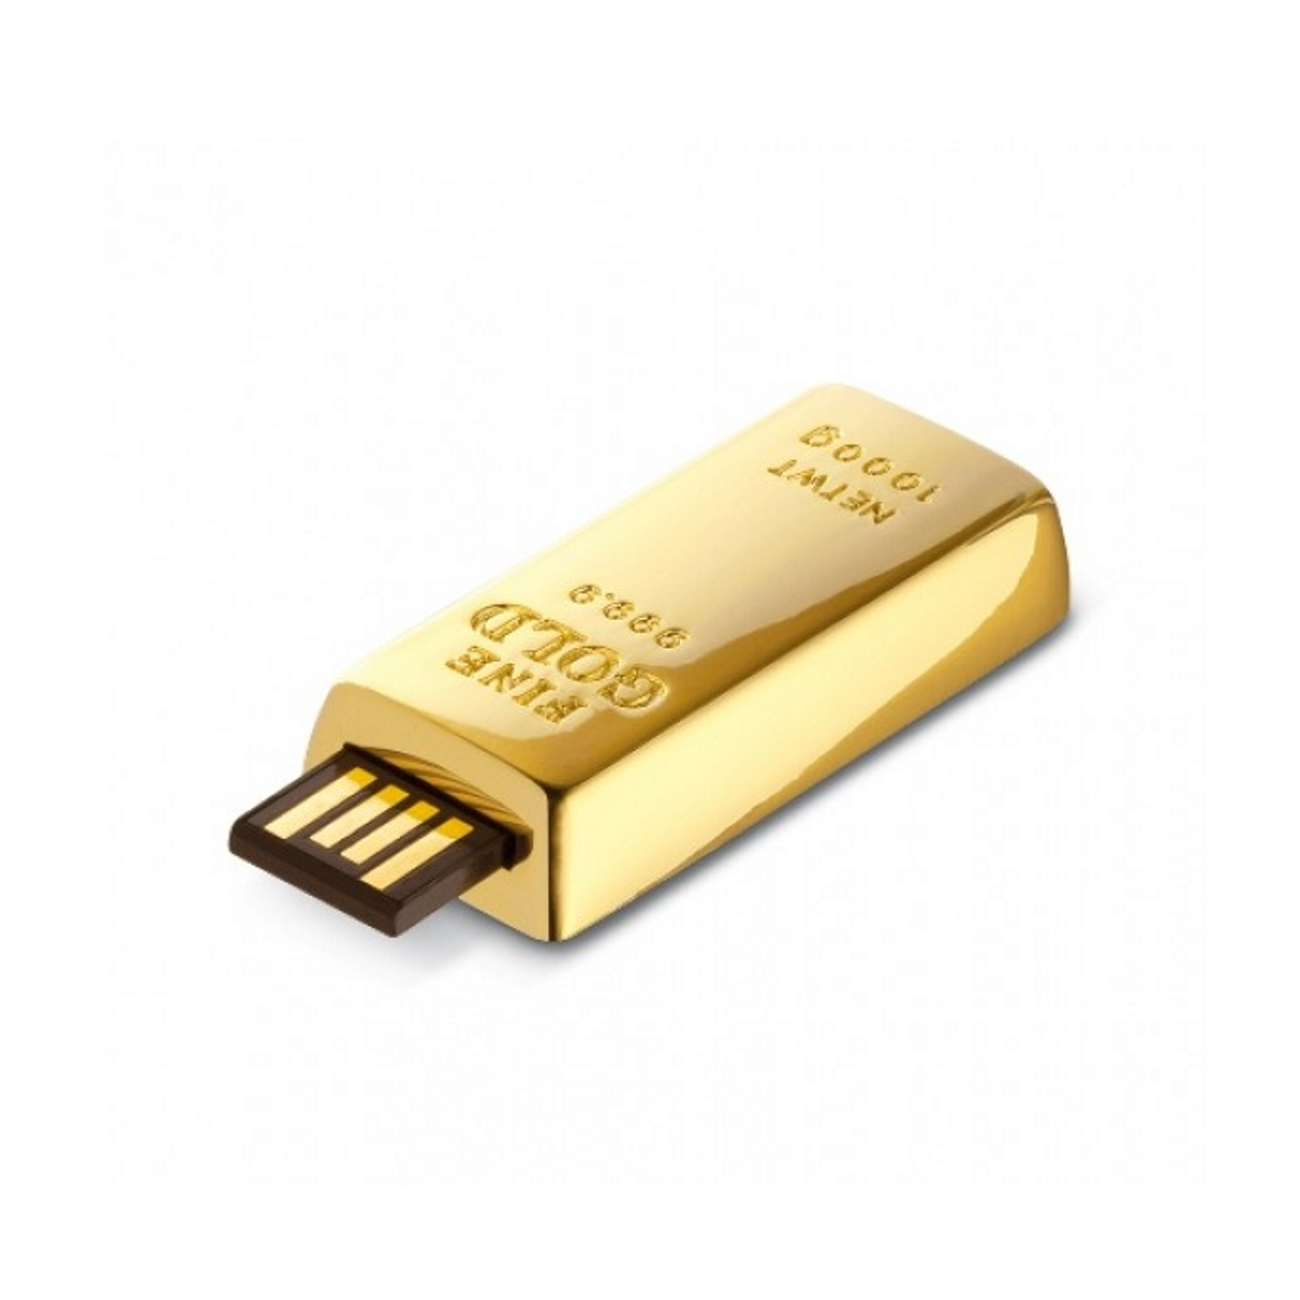 GB) 4 USB-Stick ® GERMANY USB (Gold, Goldbarren